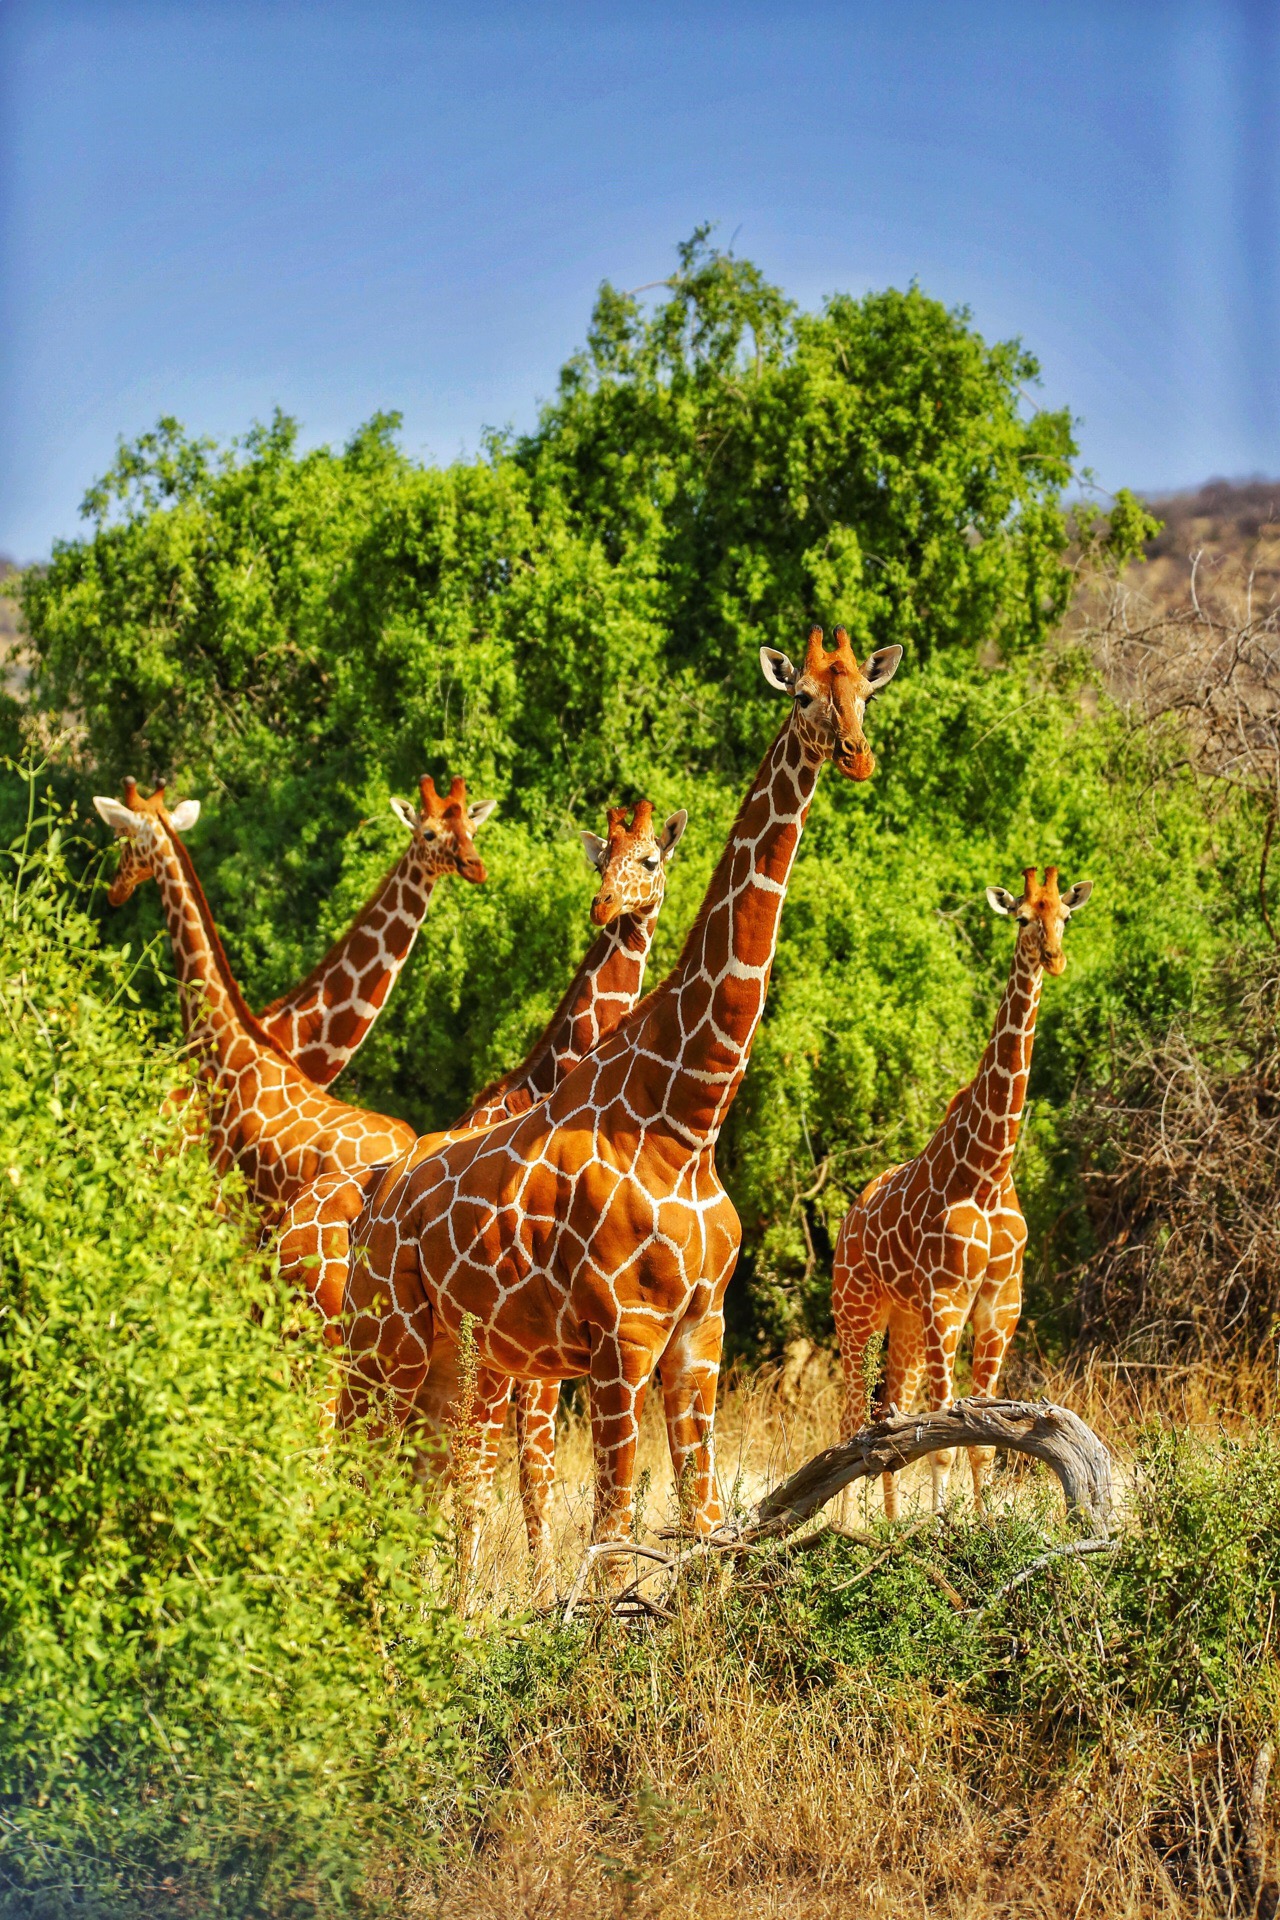 来一组萌萌的长颈鹿🦒。在肯尼亚，看到了很多次长颈鹿。萌萌的。建议在8月份的时候去。不仅能看到各种长颈